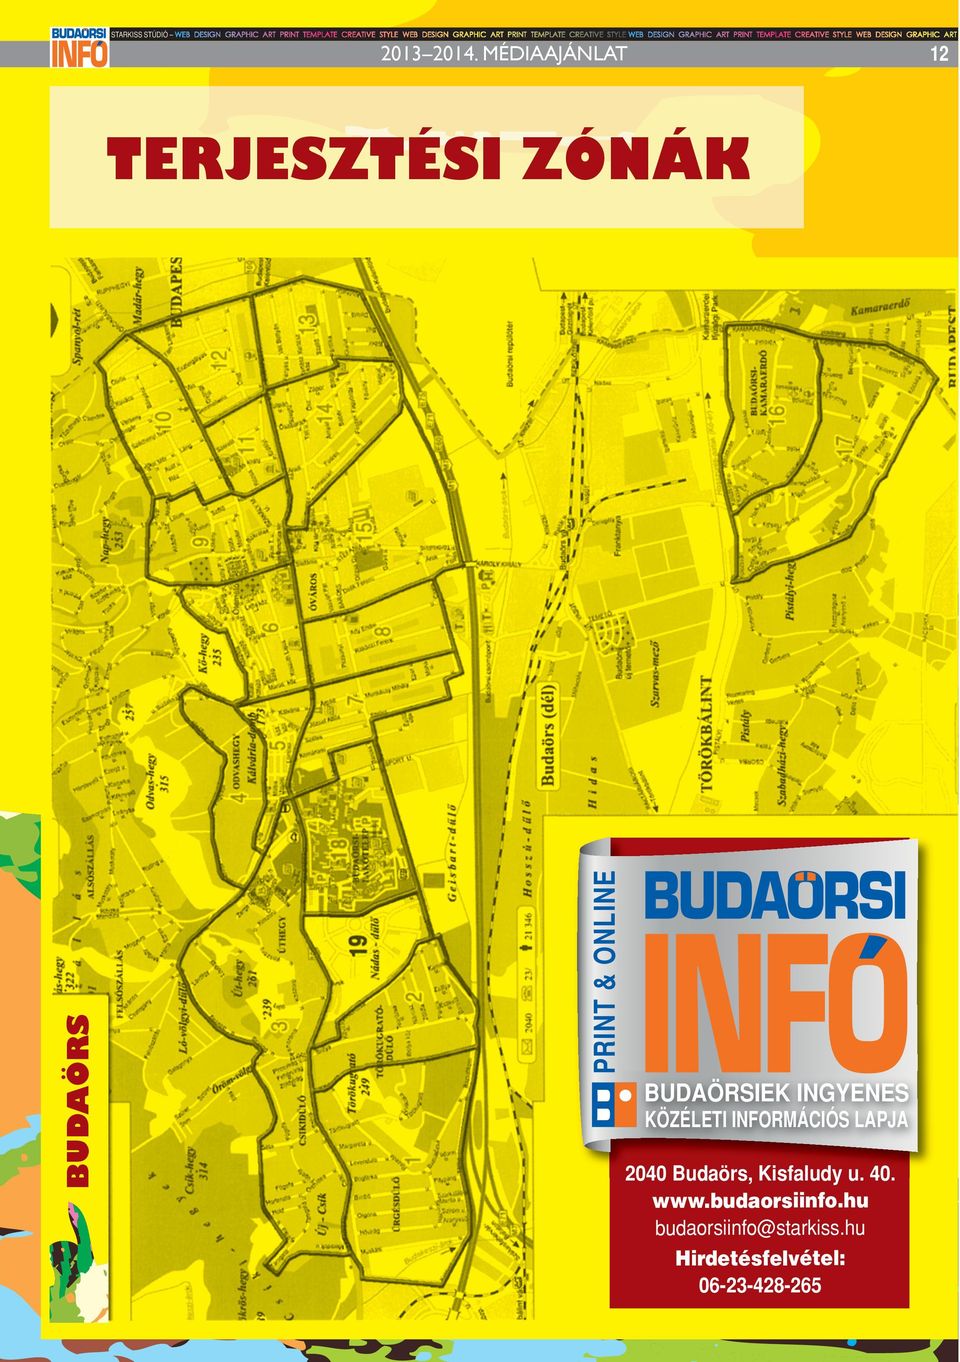 2040 Budaörs, Kisfaludy u. 40. www.budaorsiinfo.